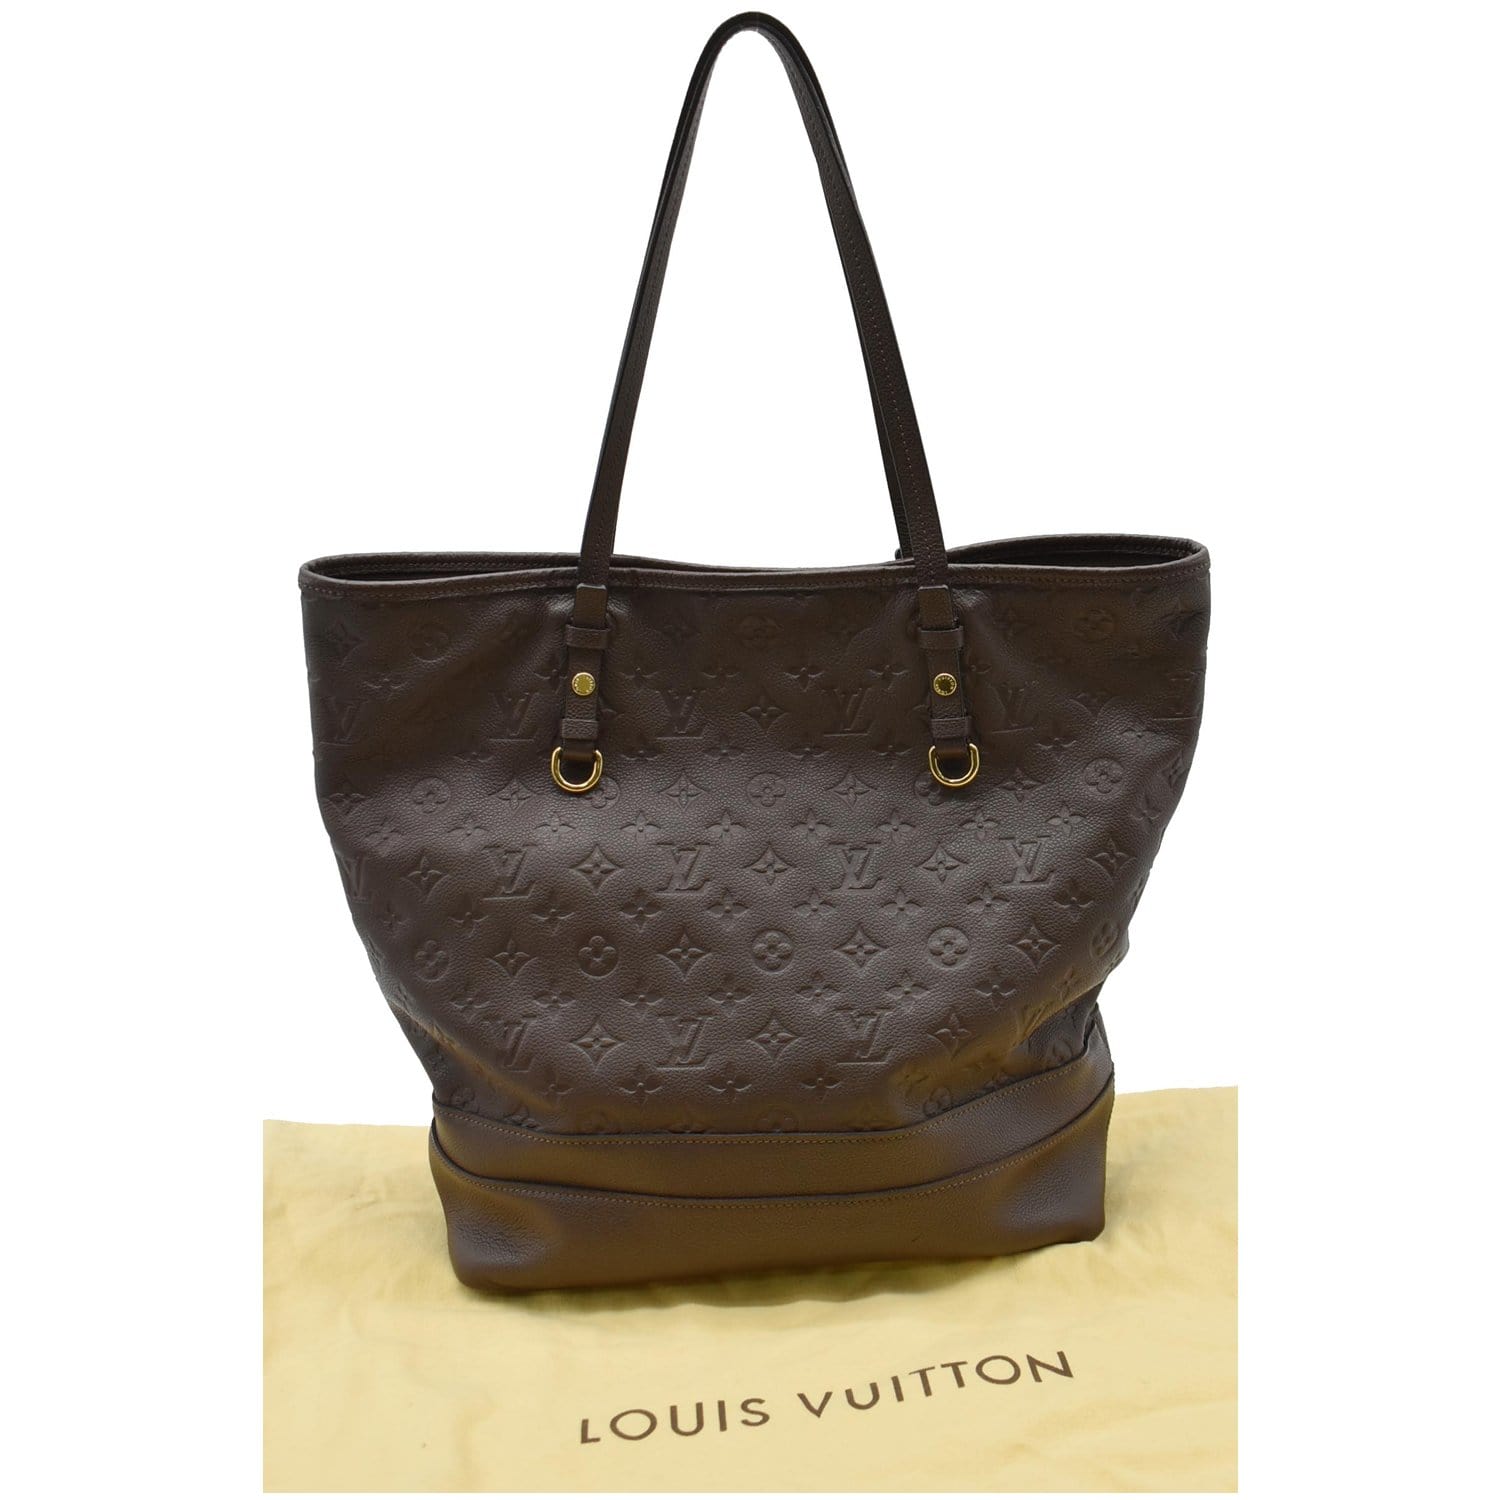 Pouch - Louis - louis vuitton citadines large model shopping bag